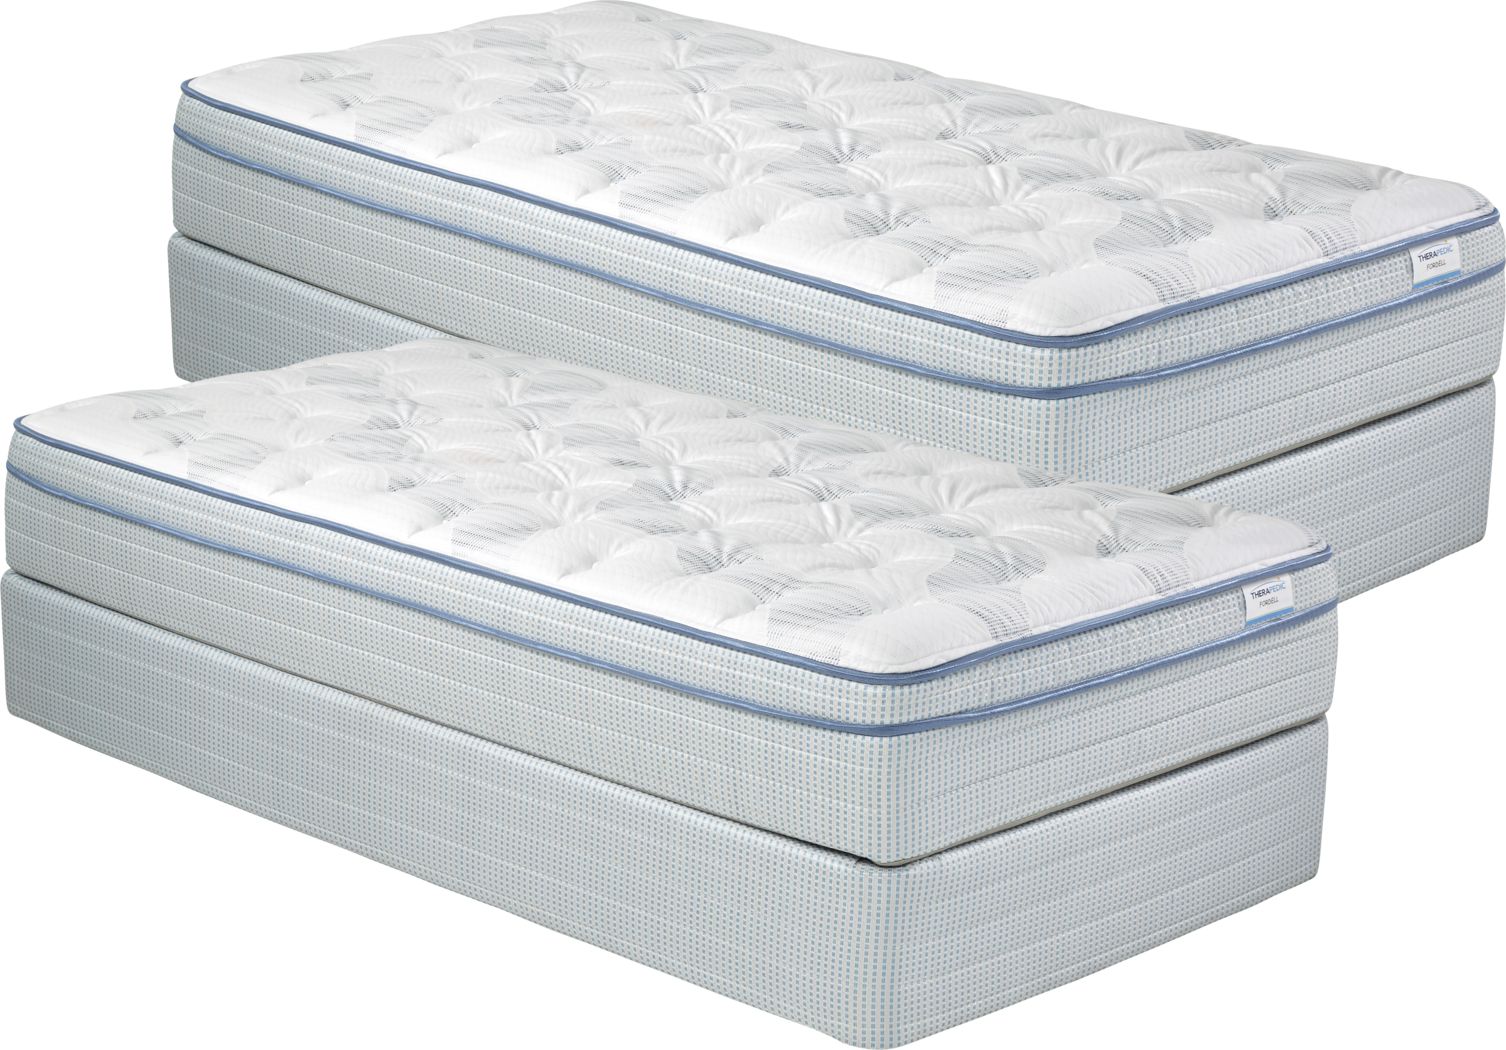 twin mattress set deals